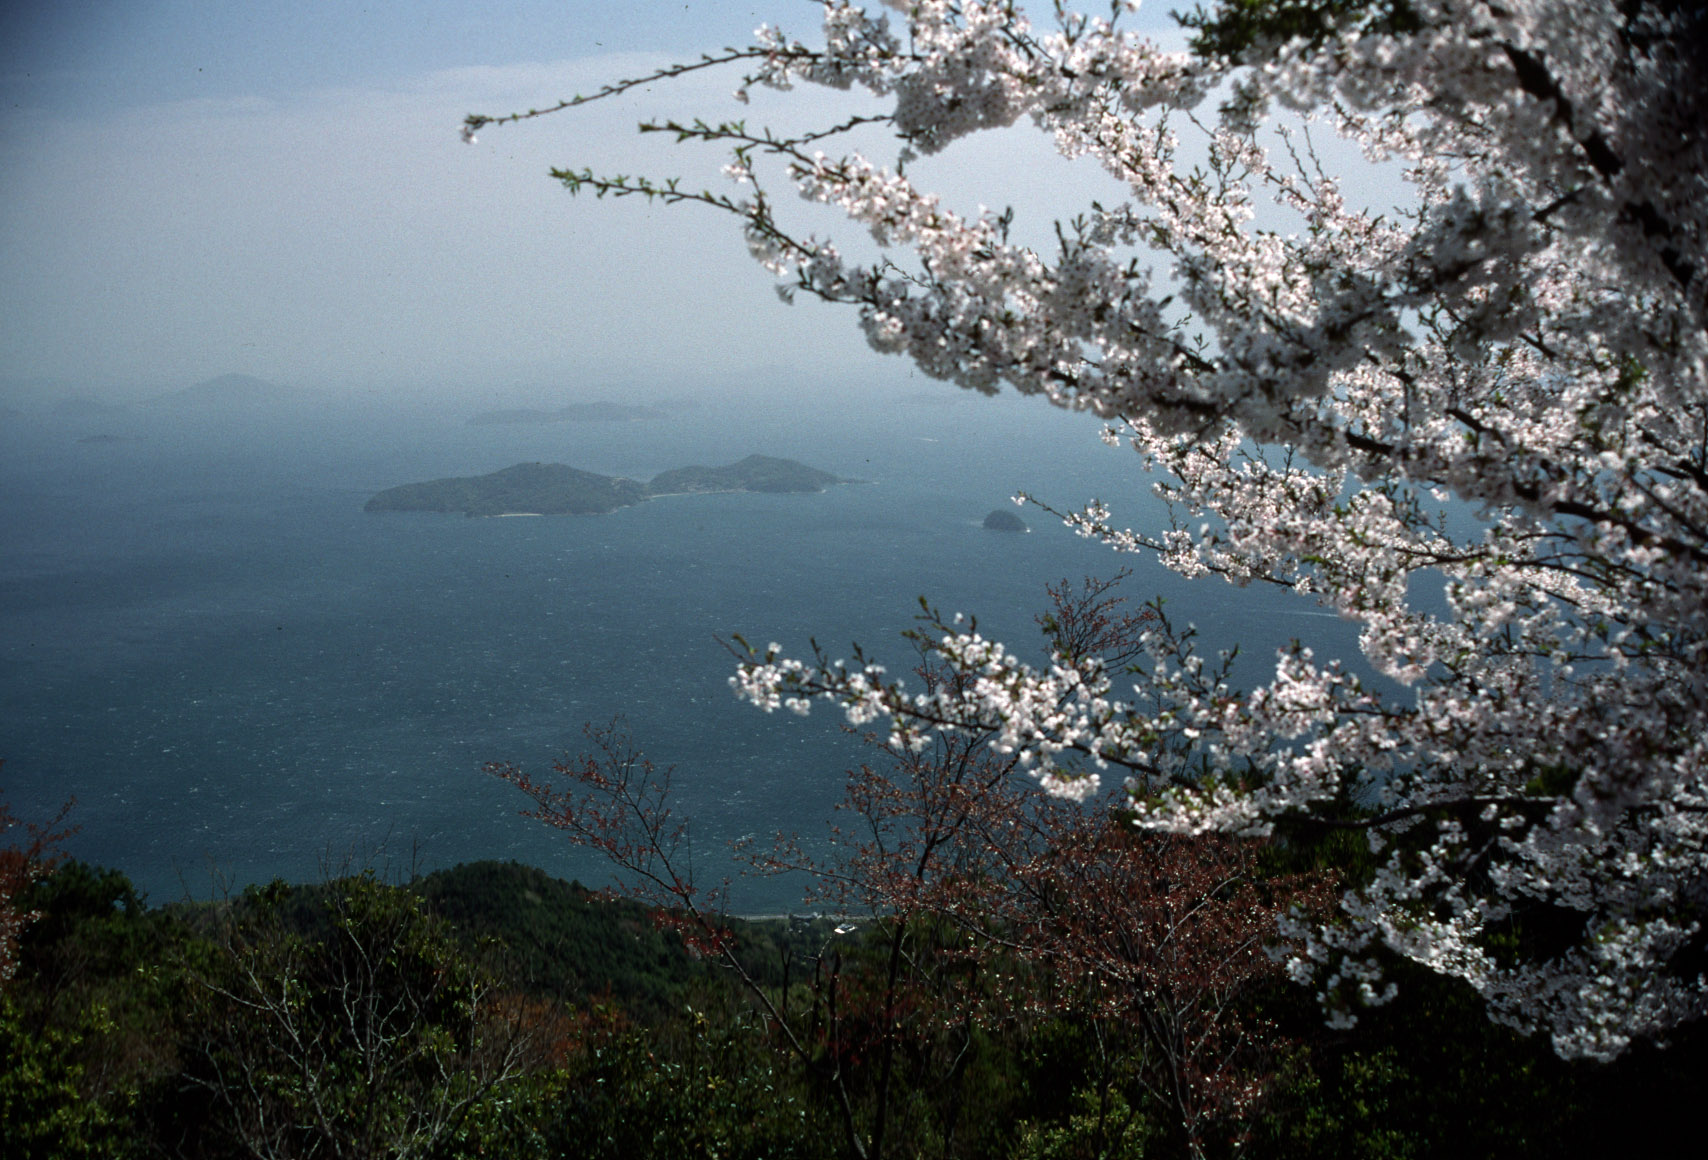 Sea of Japan (East Sea)